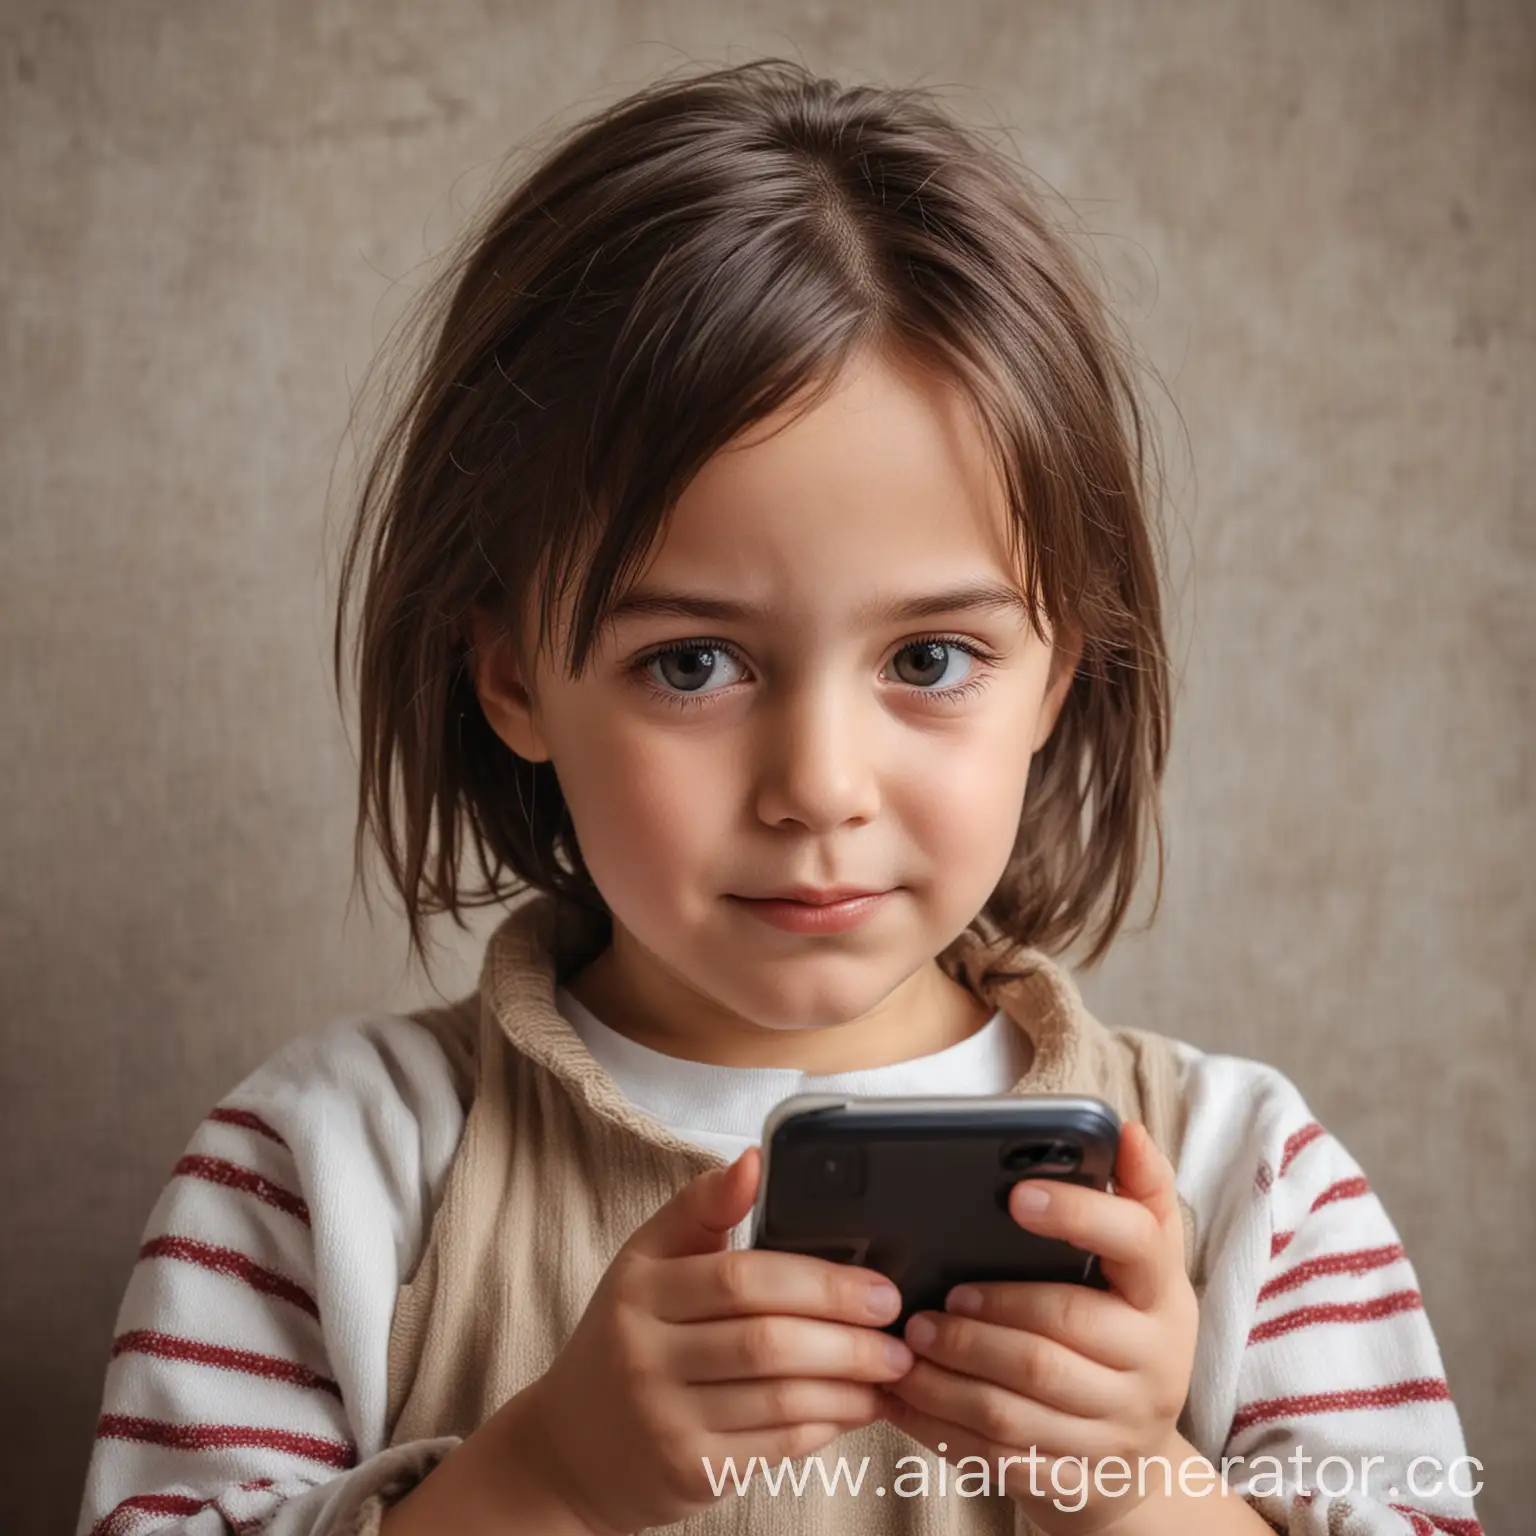 ребёнок пяти лет  в телефоне, потребляя низкокачественный контент в интернете